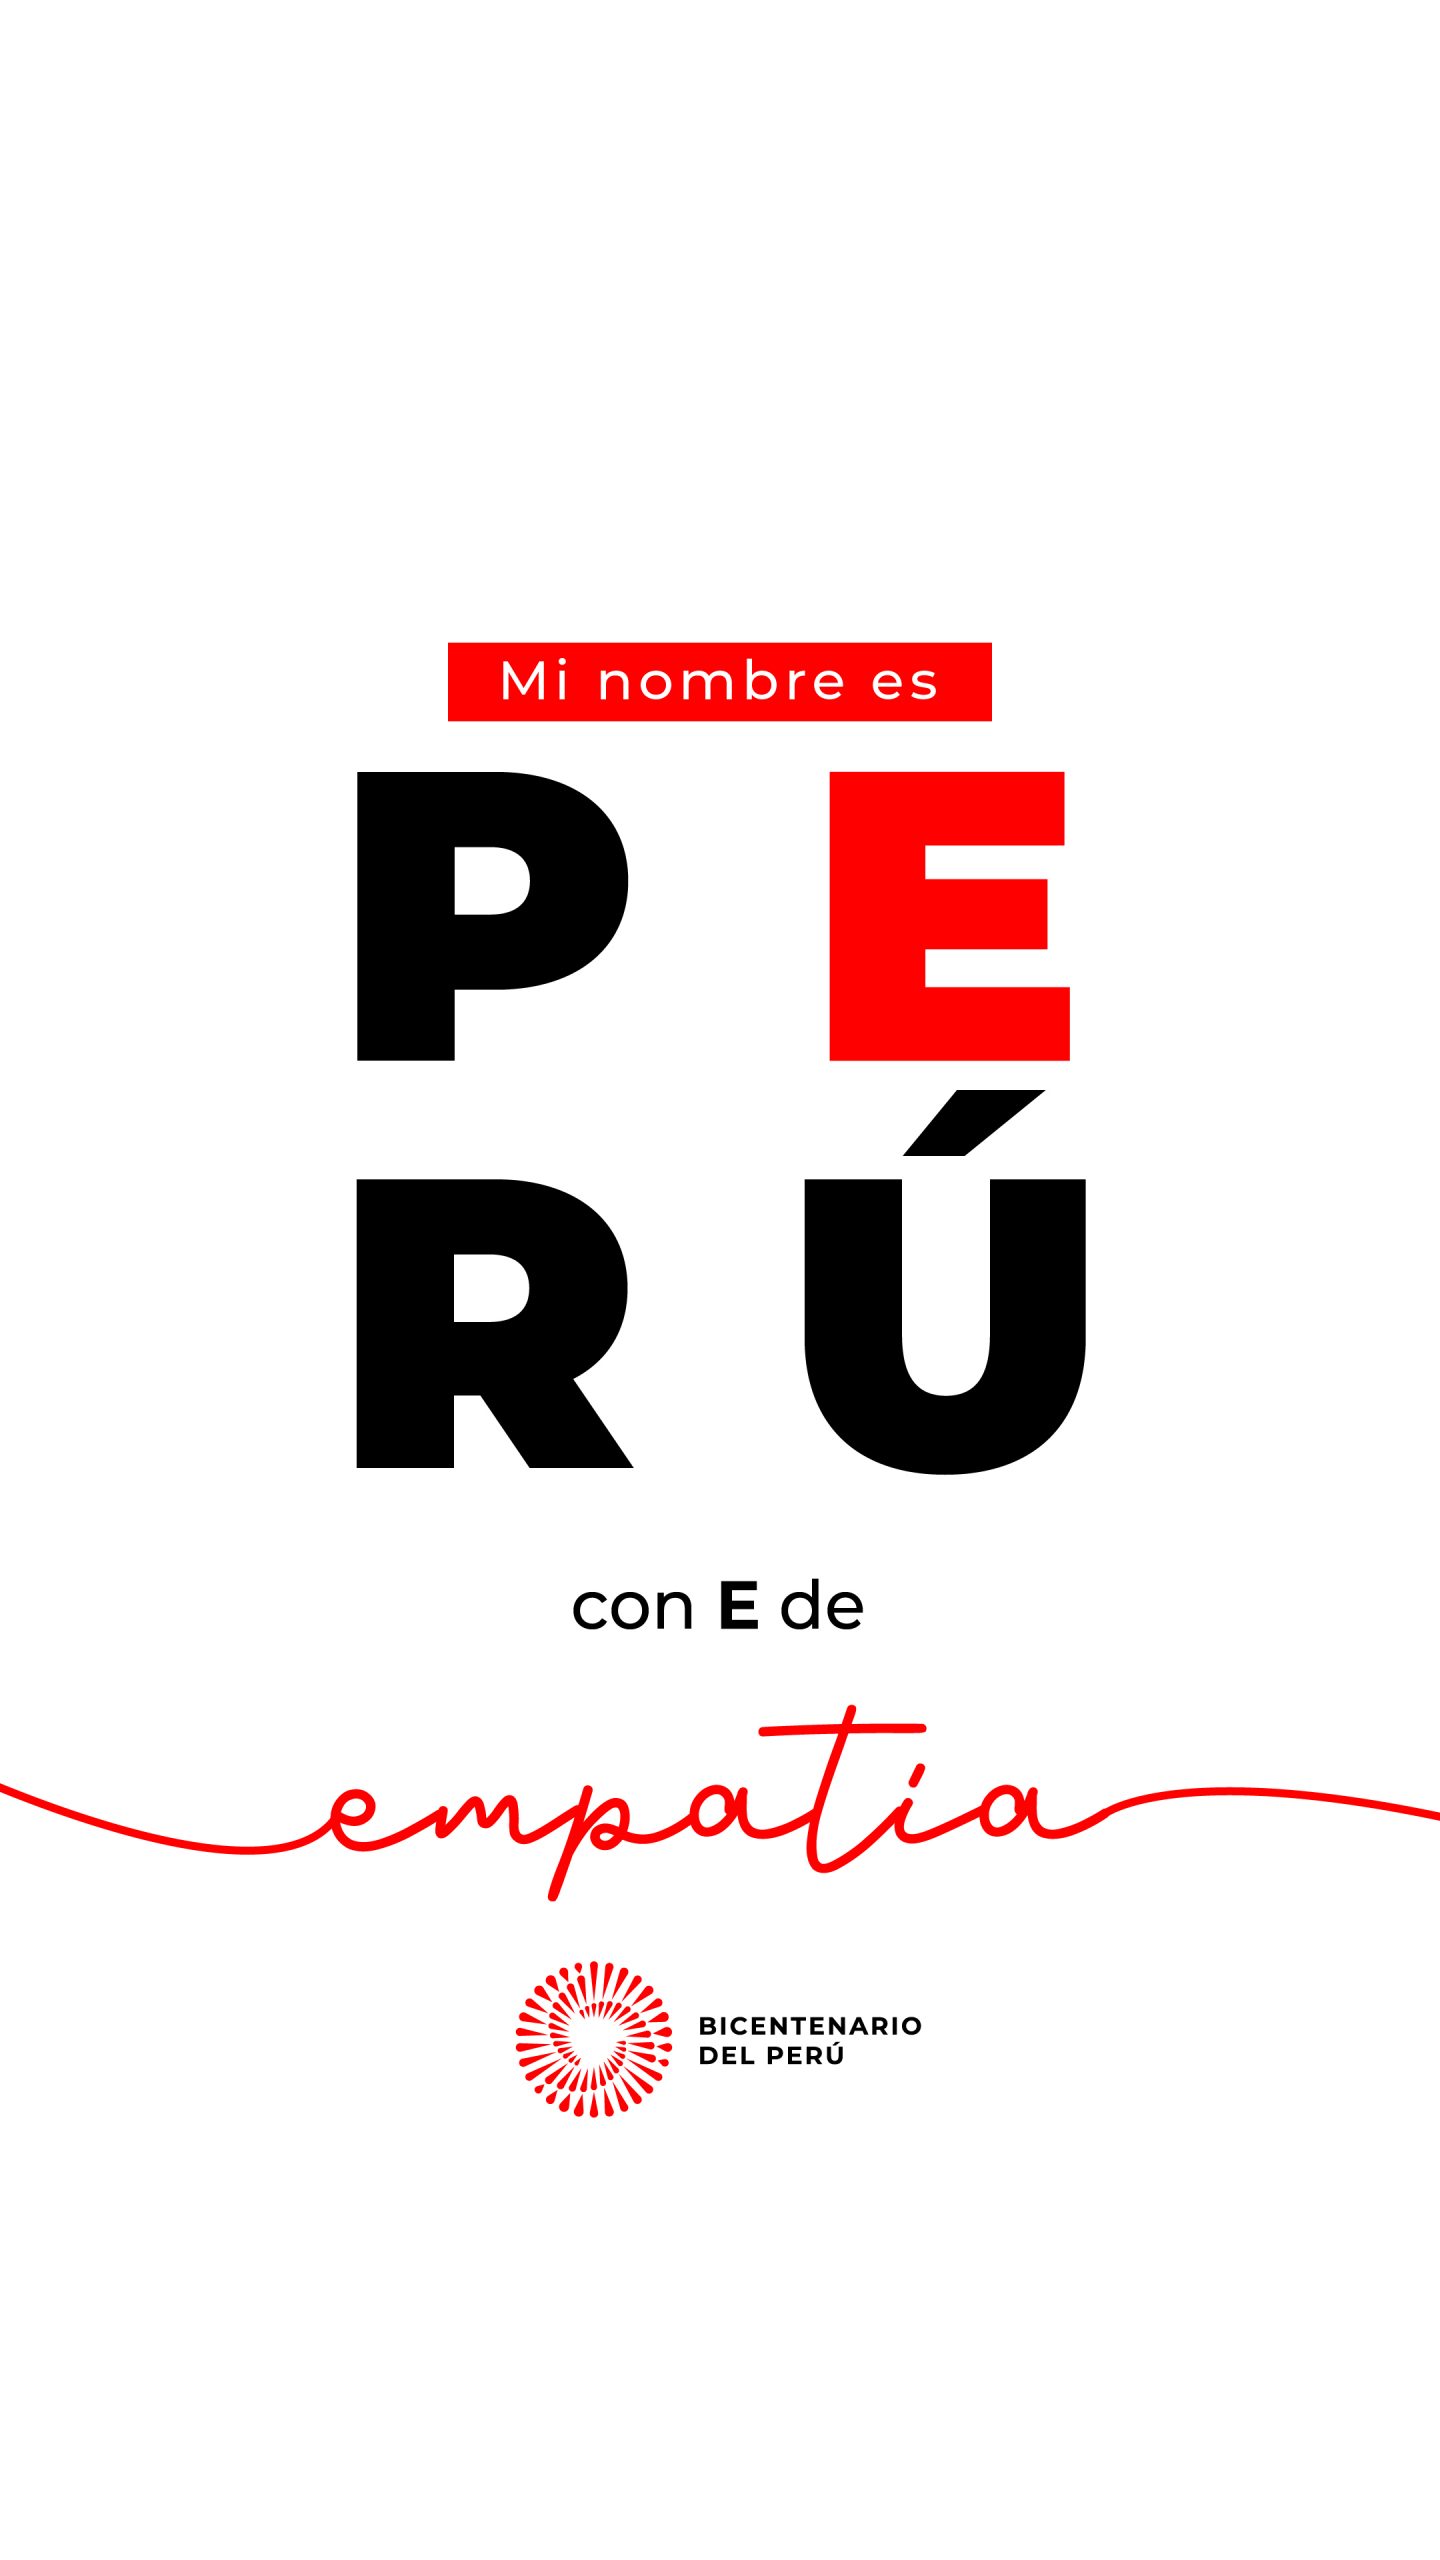 Mi nombre es Perú: dinos qué Perú quieres ser - Bicentenario del Perú